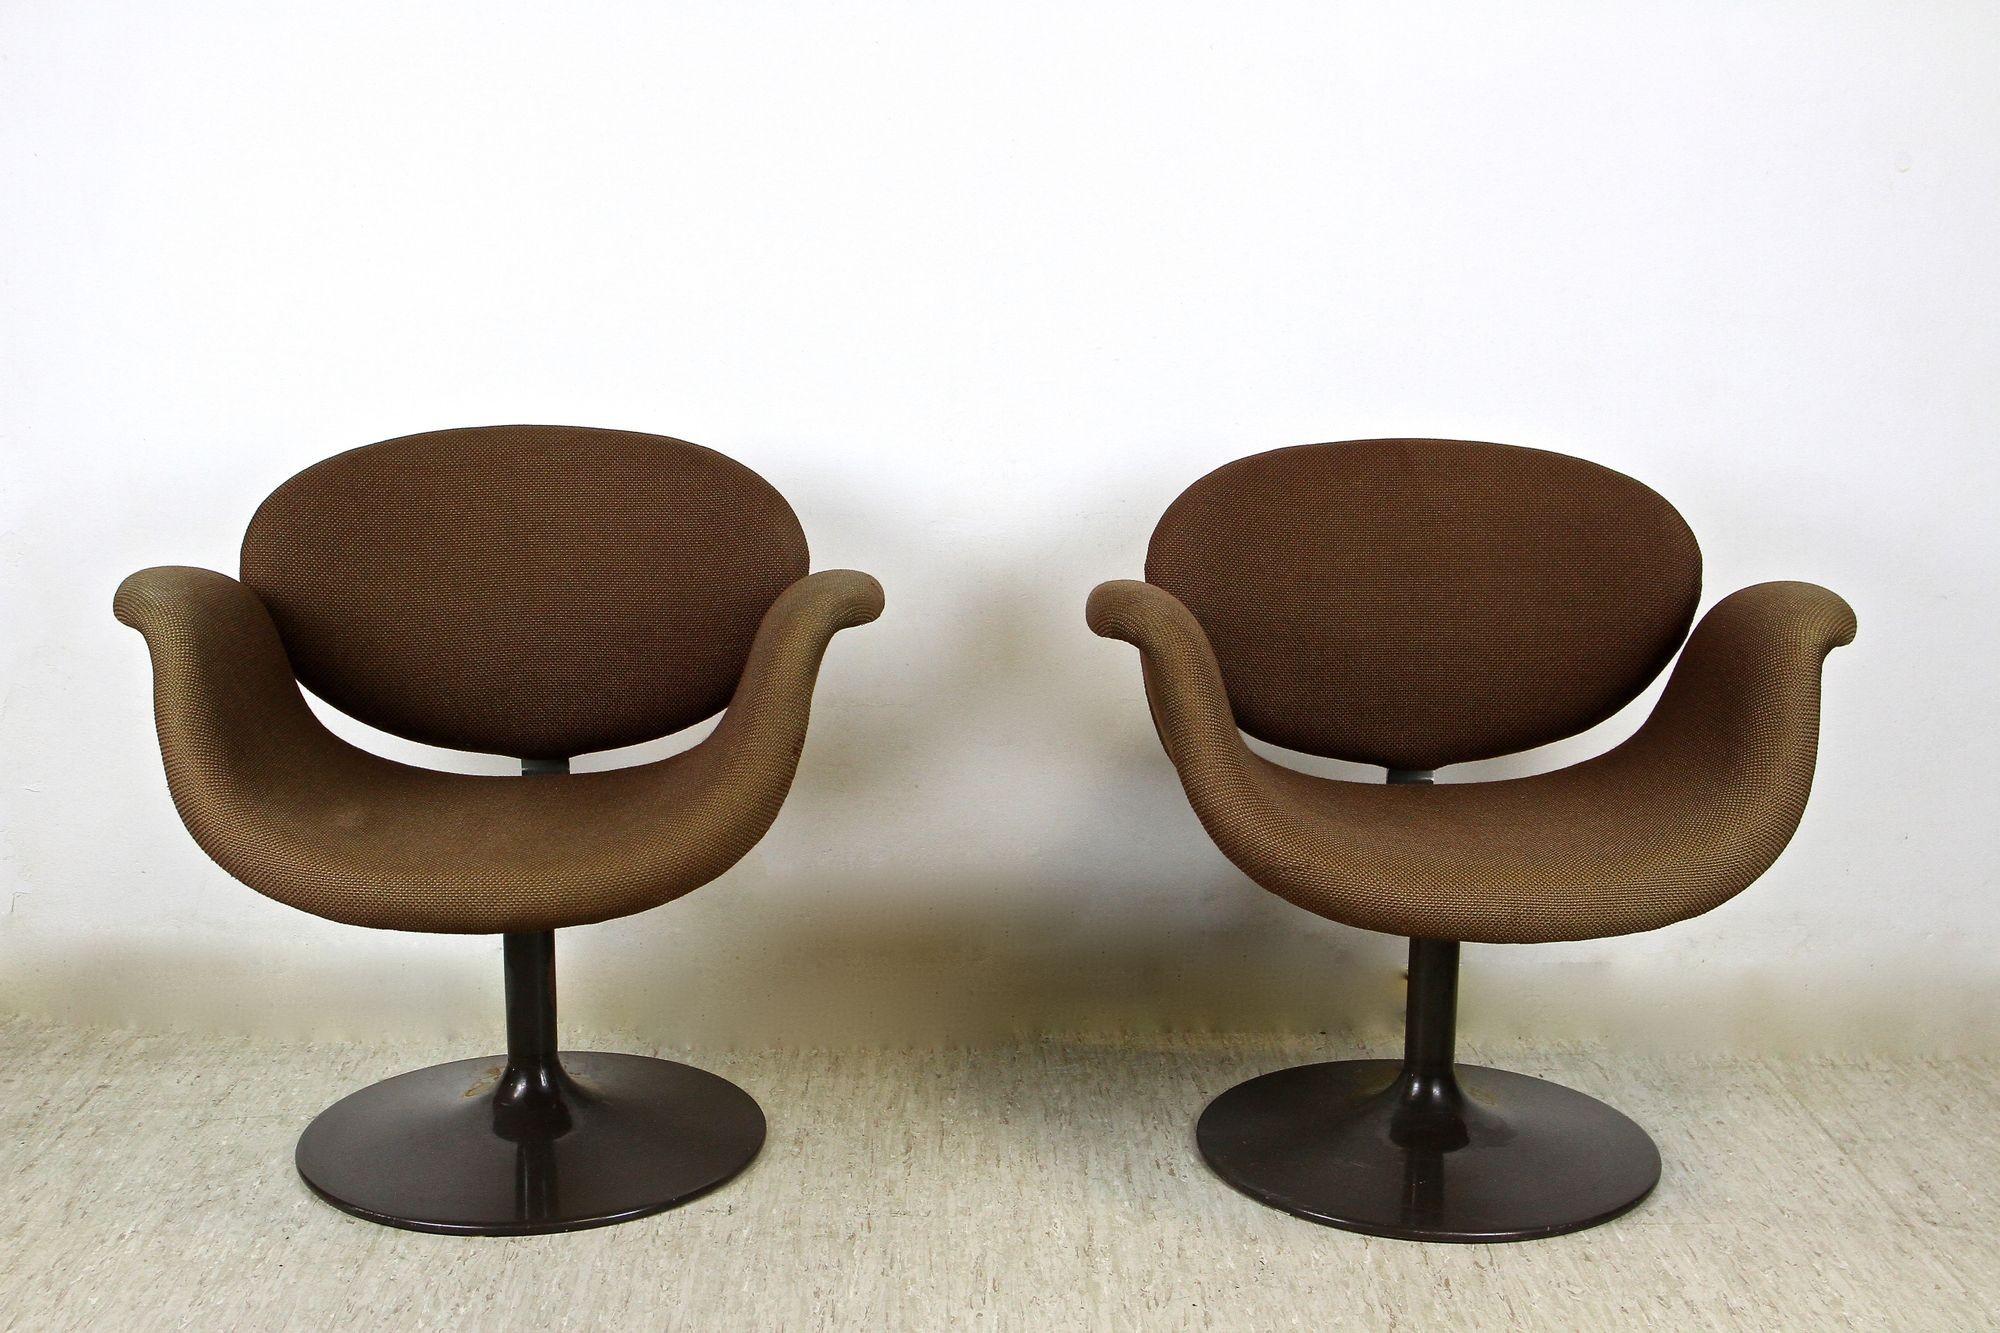 Schönes Paar dunkelbraune, drehbare Tulip-Sessel von Pierre Paulin aus der Mitte des Jahrhunderts. Der um 1965 entstandene Design-Klassiker kommt mit dem noch originalen braunen, gewebten Spezialstoff, der nur wenige, sehr minimale Abnutzungen